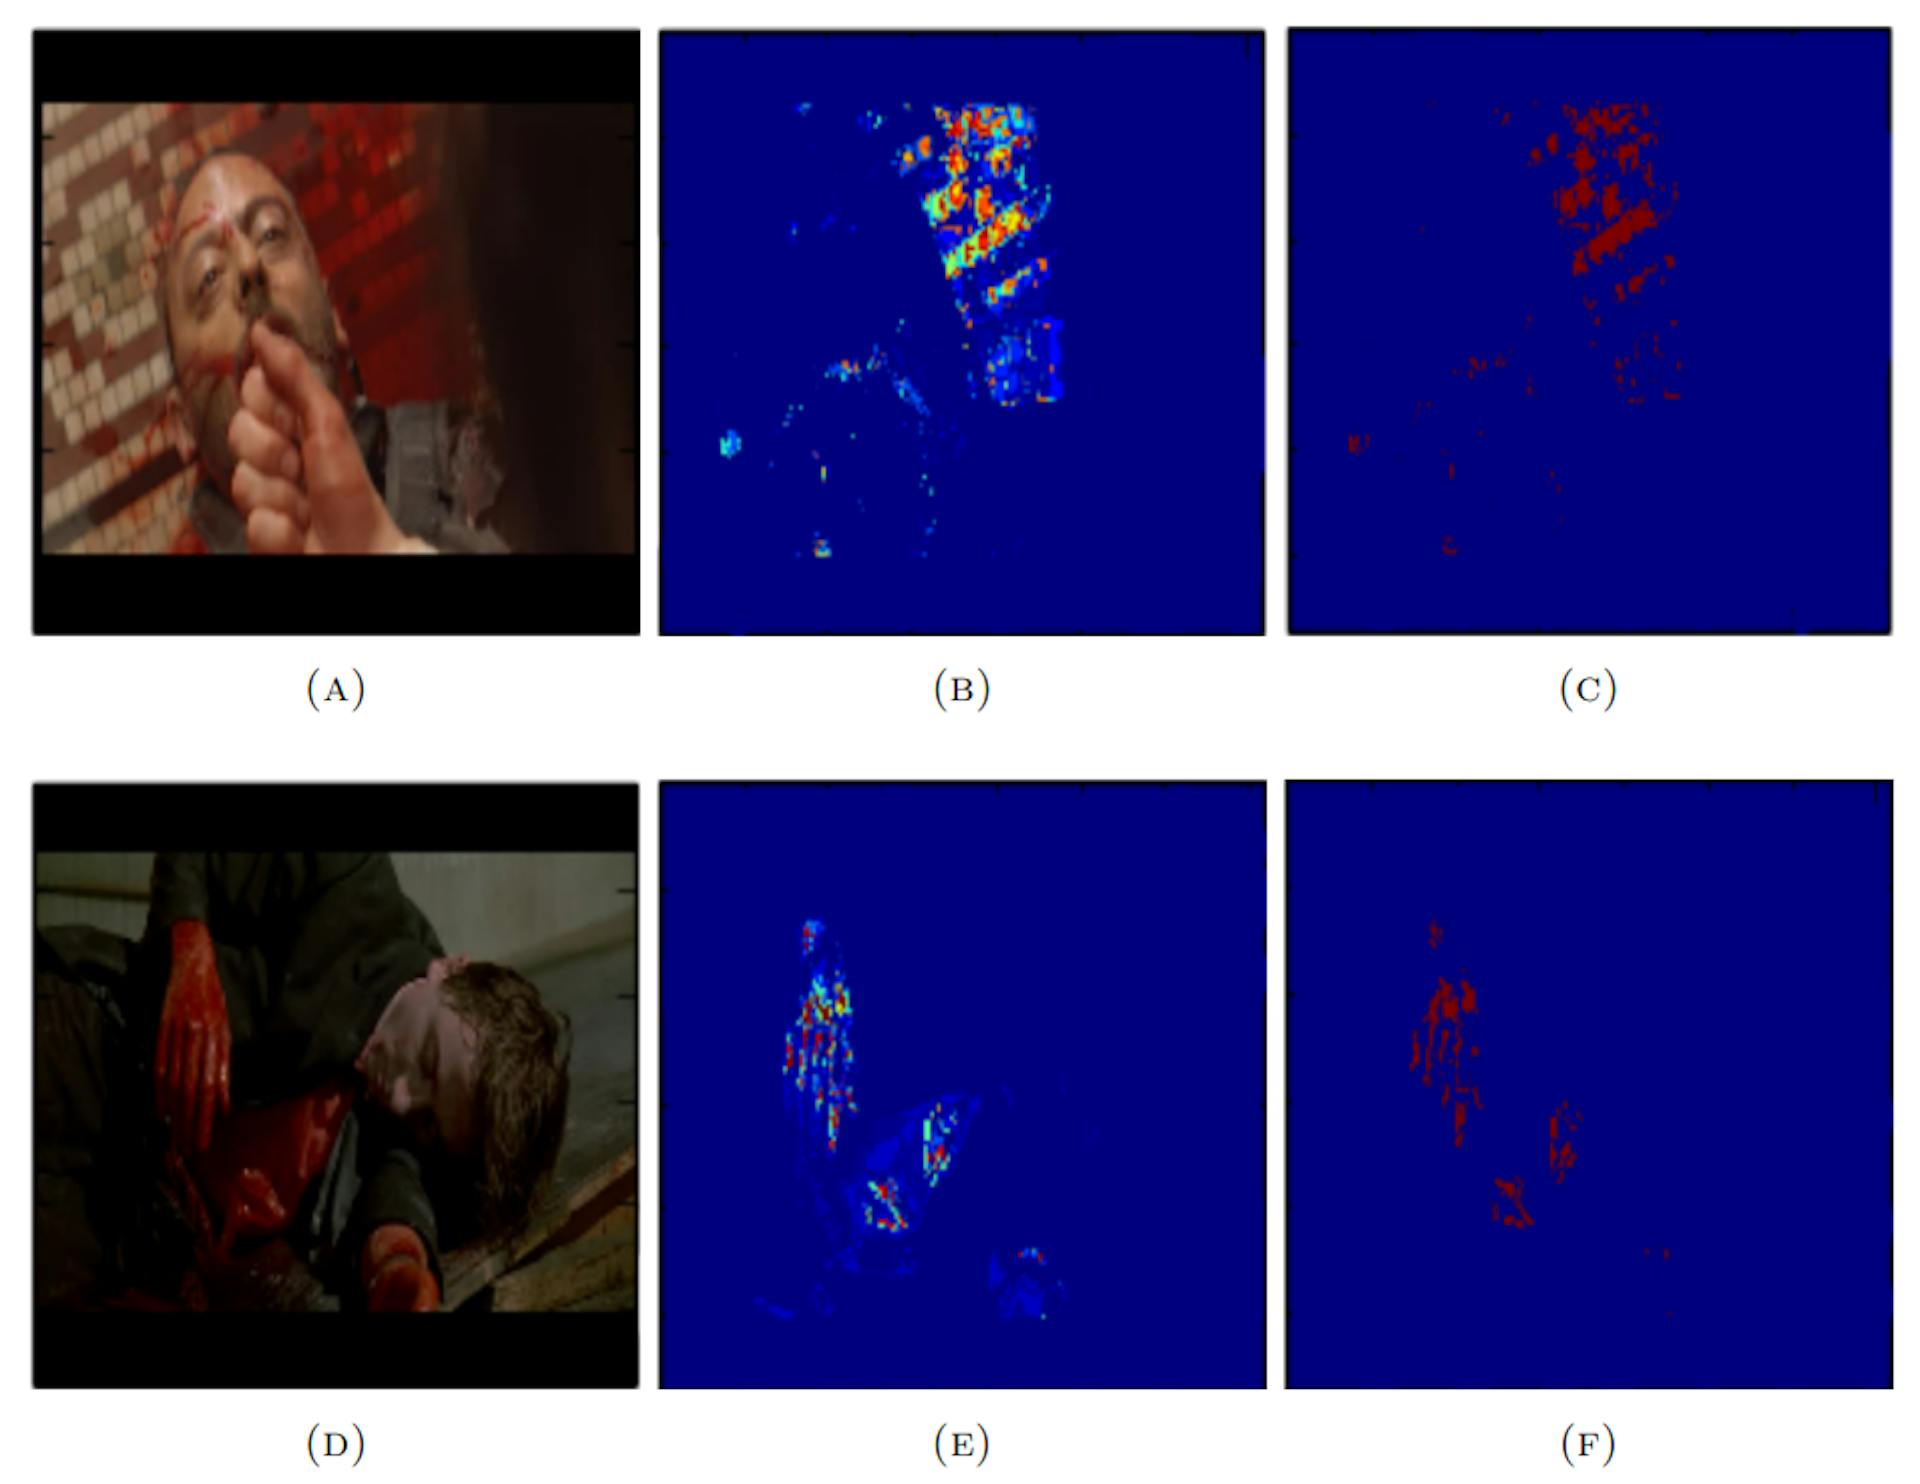 Figura 4.6: Figura que mostra o desempenho do detector de sangue em amostras do conjunto de dados de Hollywood. As imagens na primeira coluna (A e D) são as imagens de entrada, as imagens da segunda coluna (B e E) são os mapas de probabilidade de sangue e as imagens na última coluna (C e F) são os mapas de probabilidade de sangue binarizados.